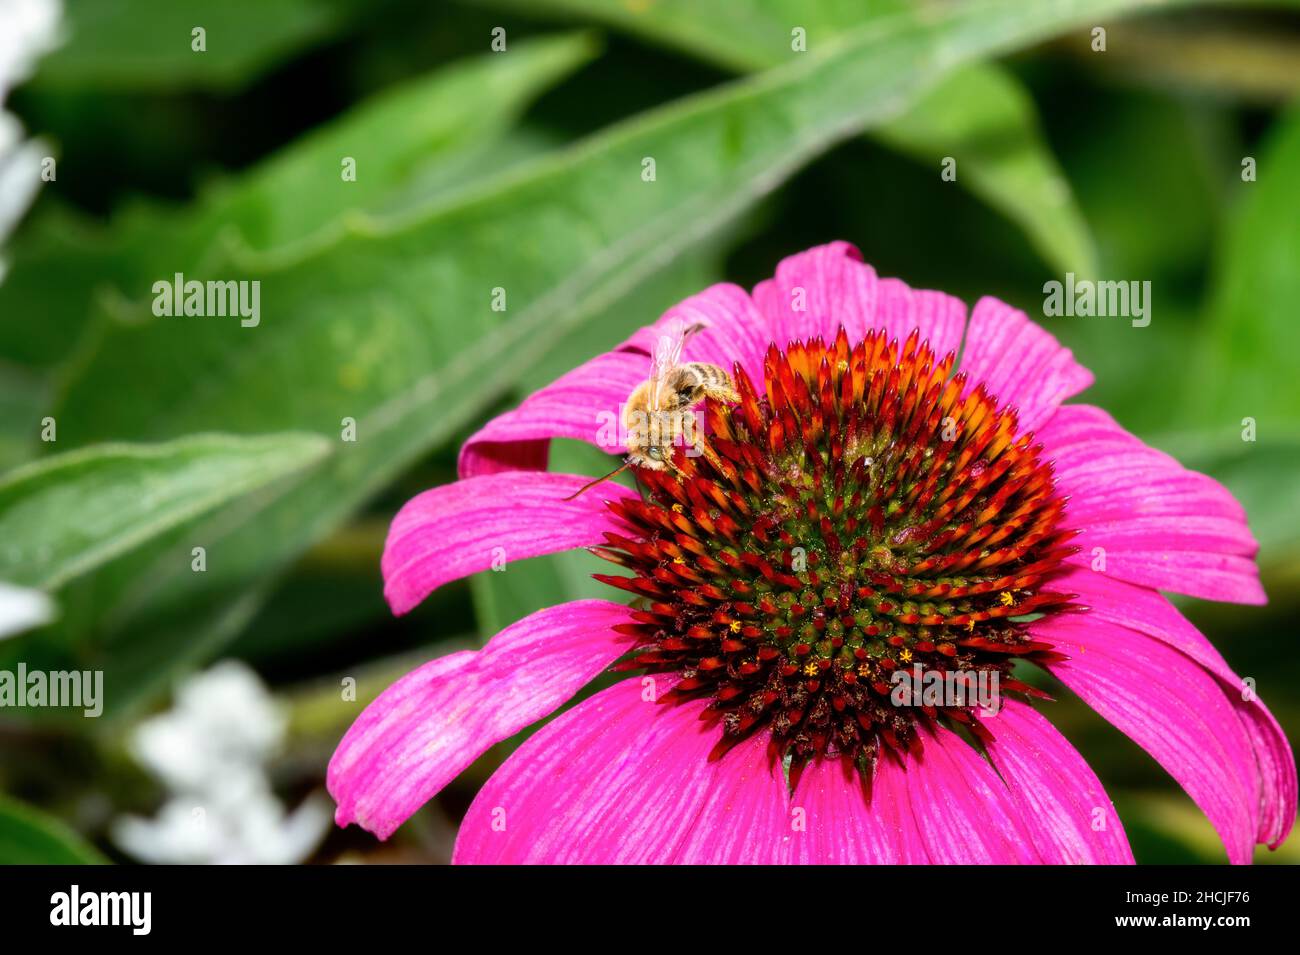 Una abeja de cuernos largos del género Melissodes Famnily Apidae recoge polen en una flor magenta brillante Foto de stock